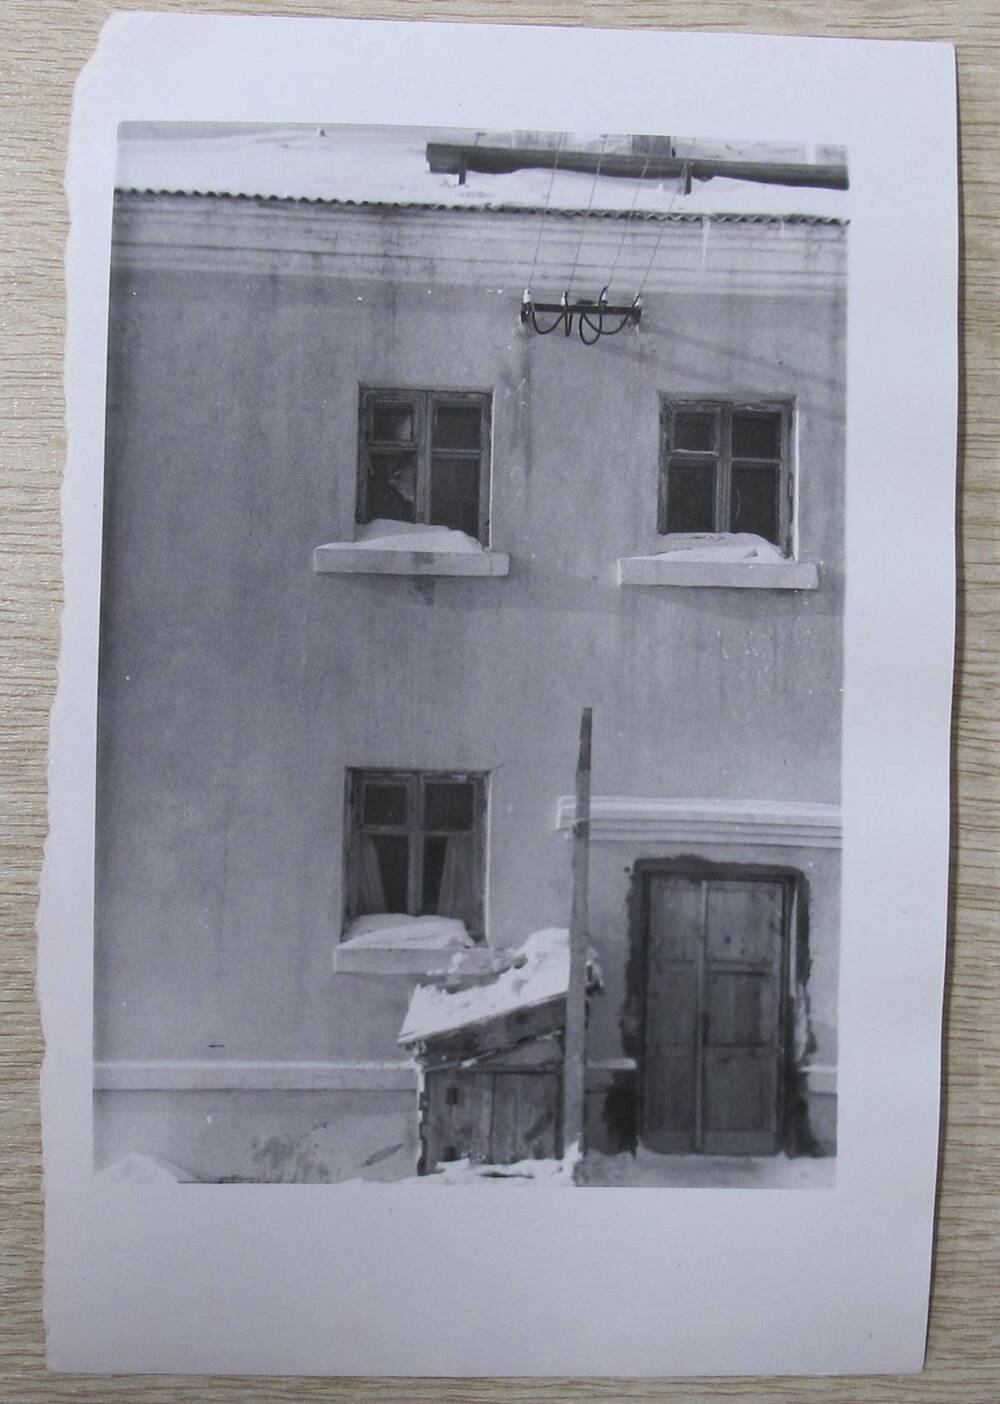 Фотография. Восточная стена дома в 2-х вариантах. Жилой дом по ул. К. Маркса, д. 25.